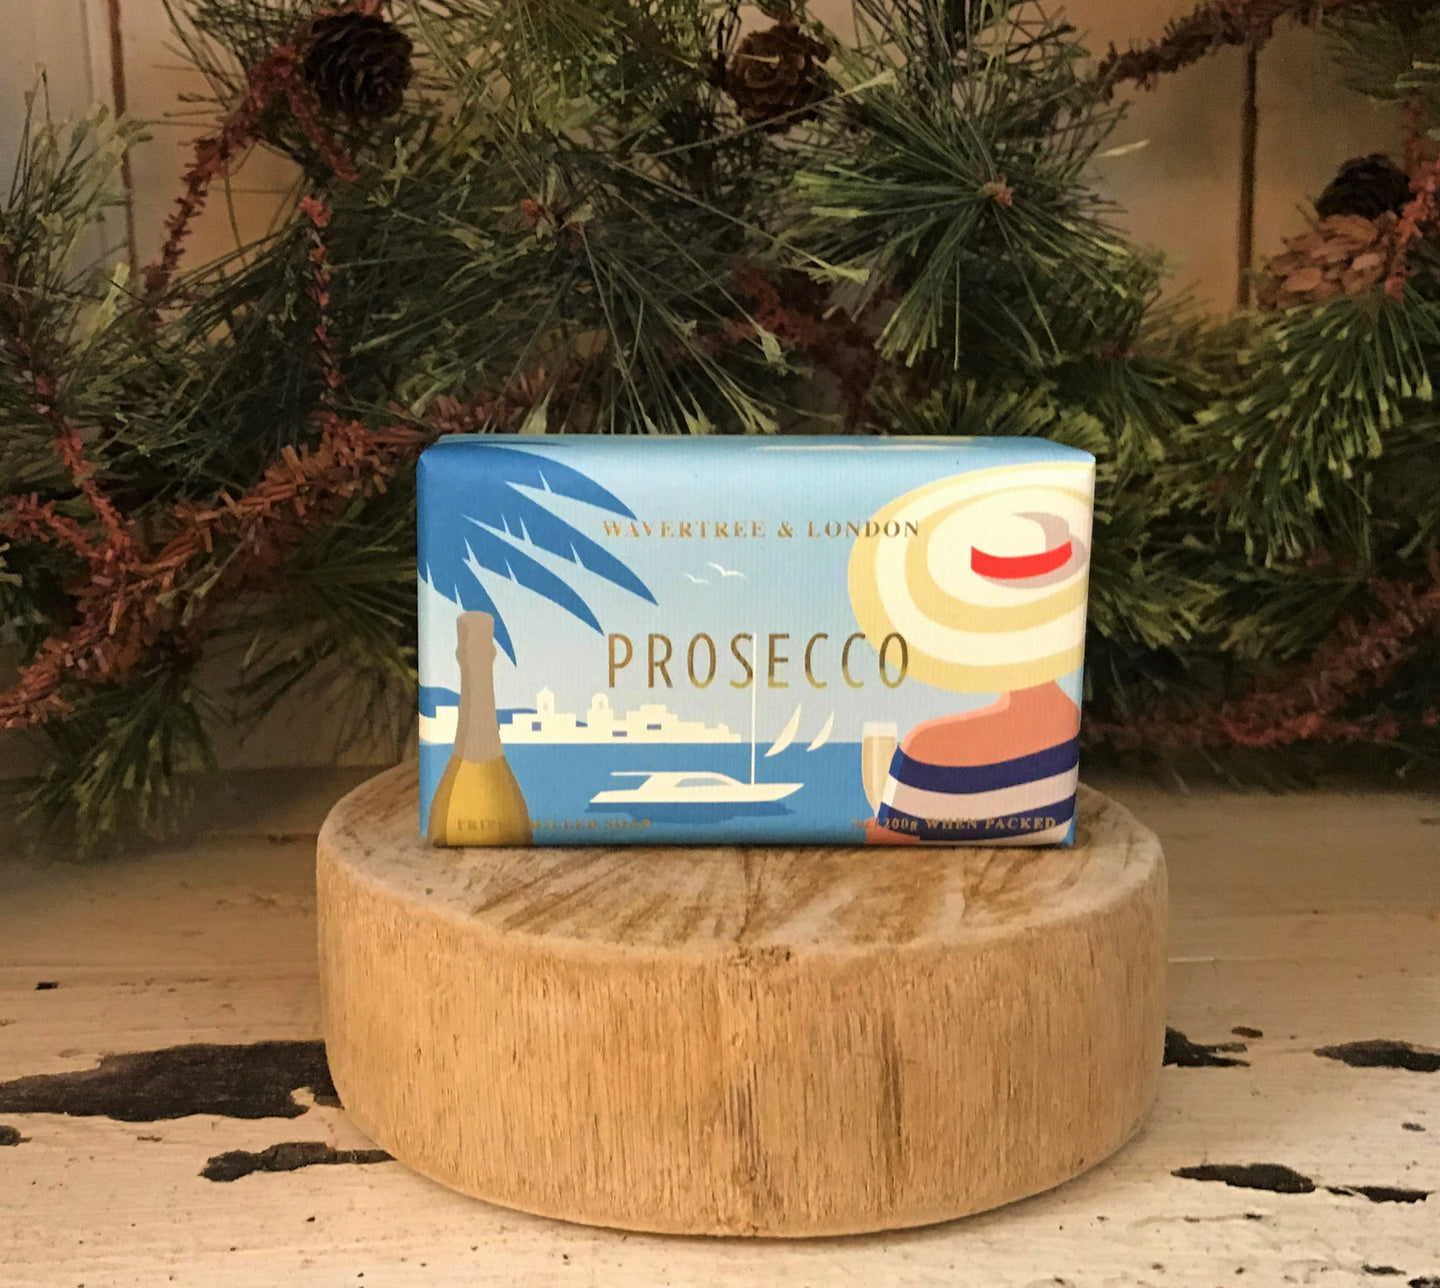 Prosecco Soap